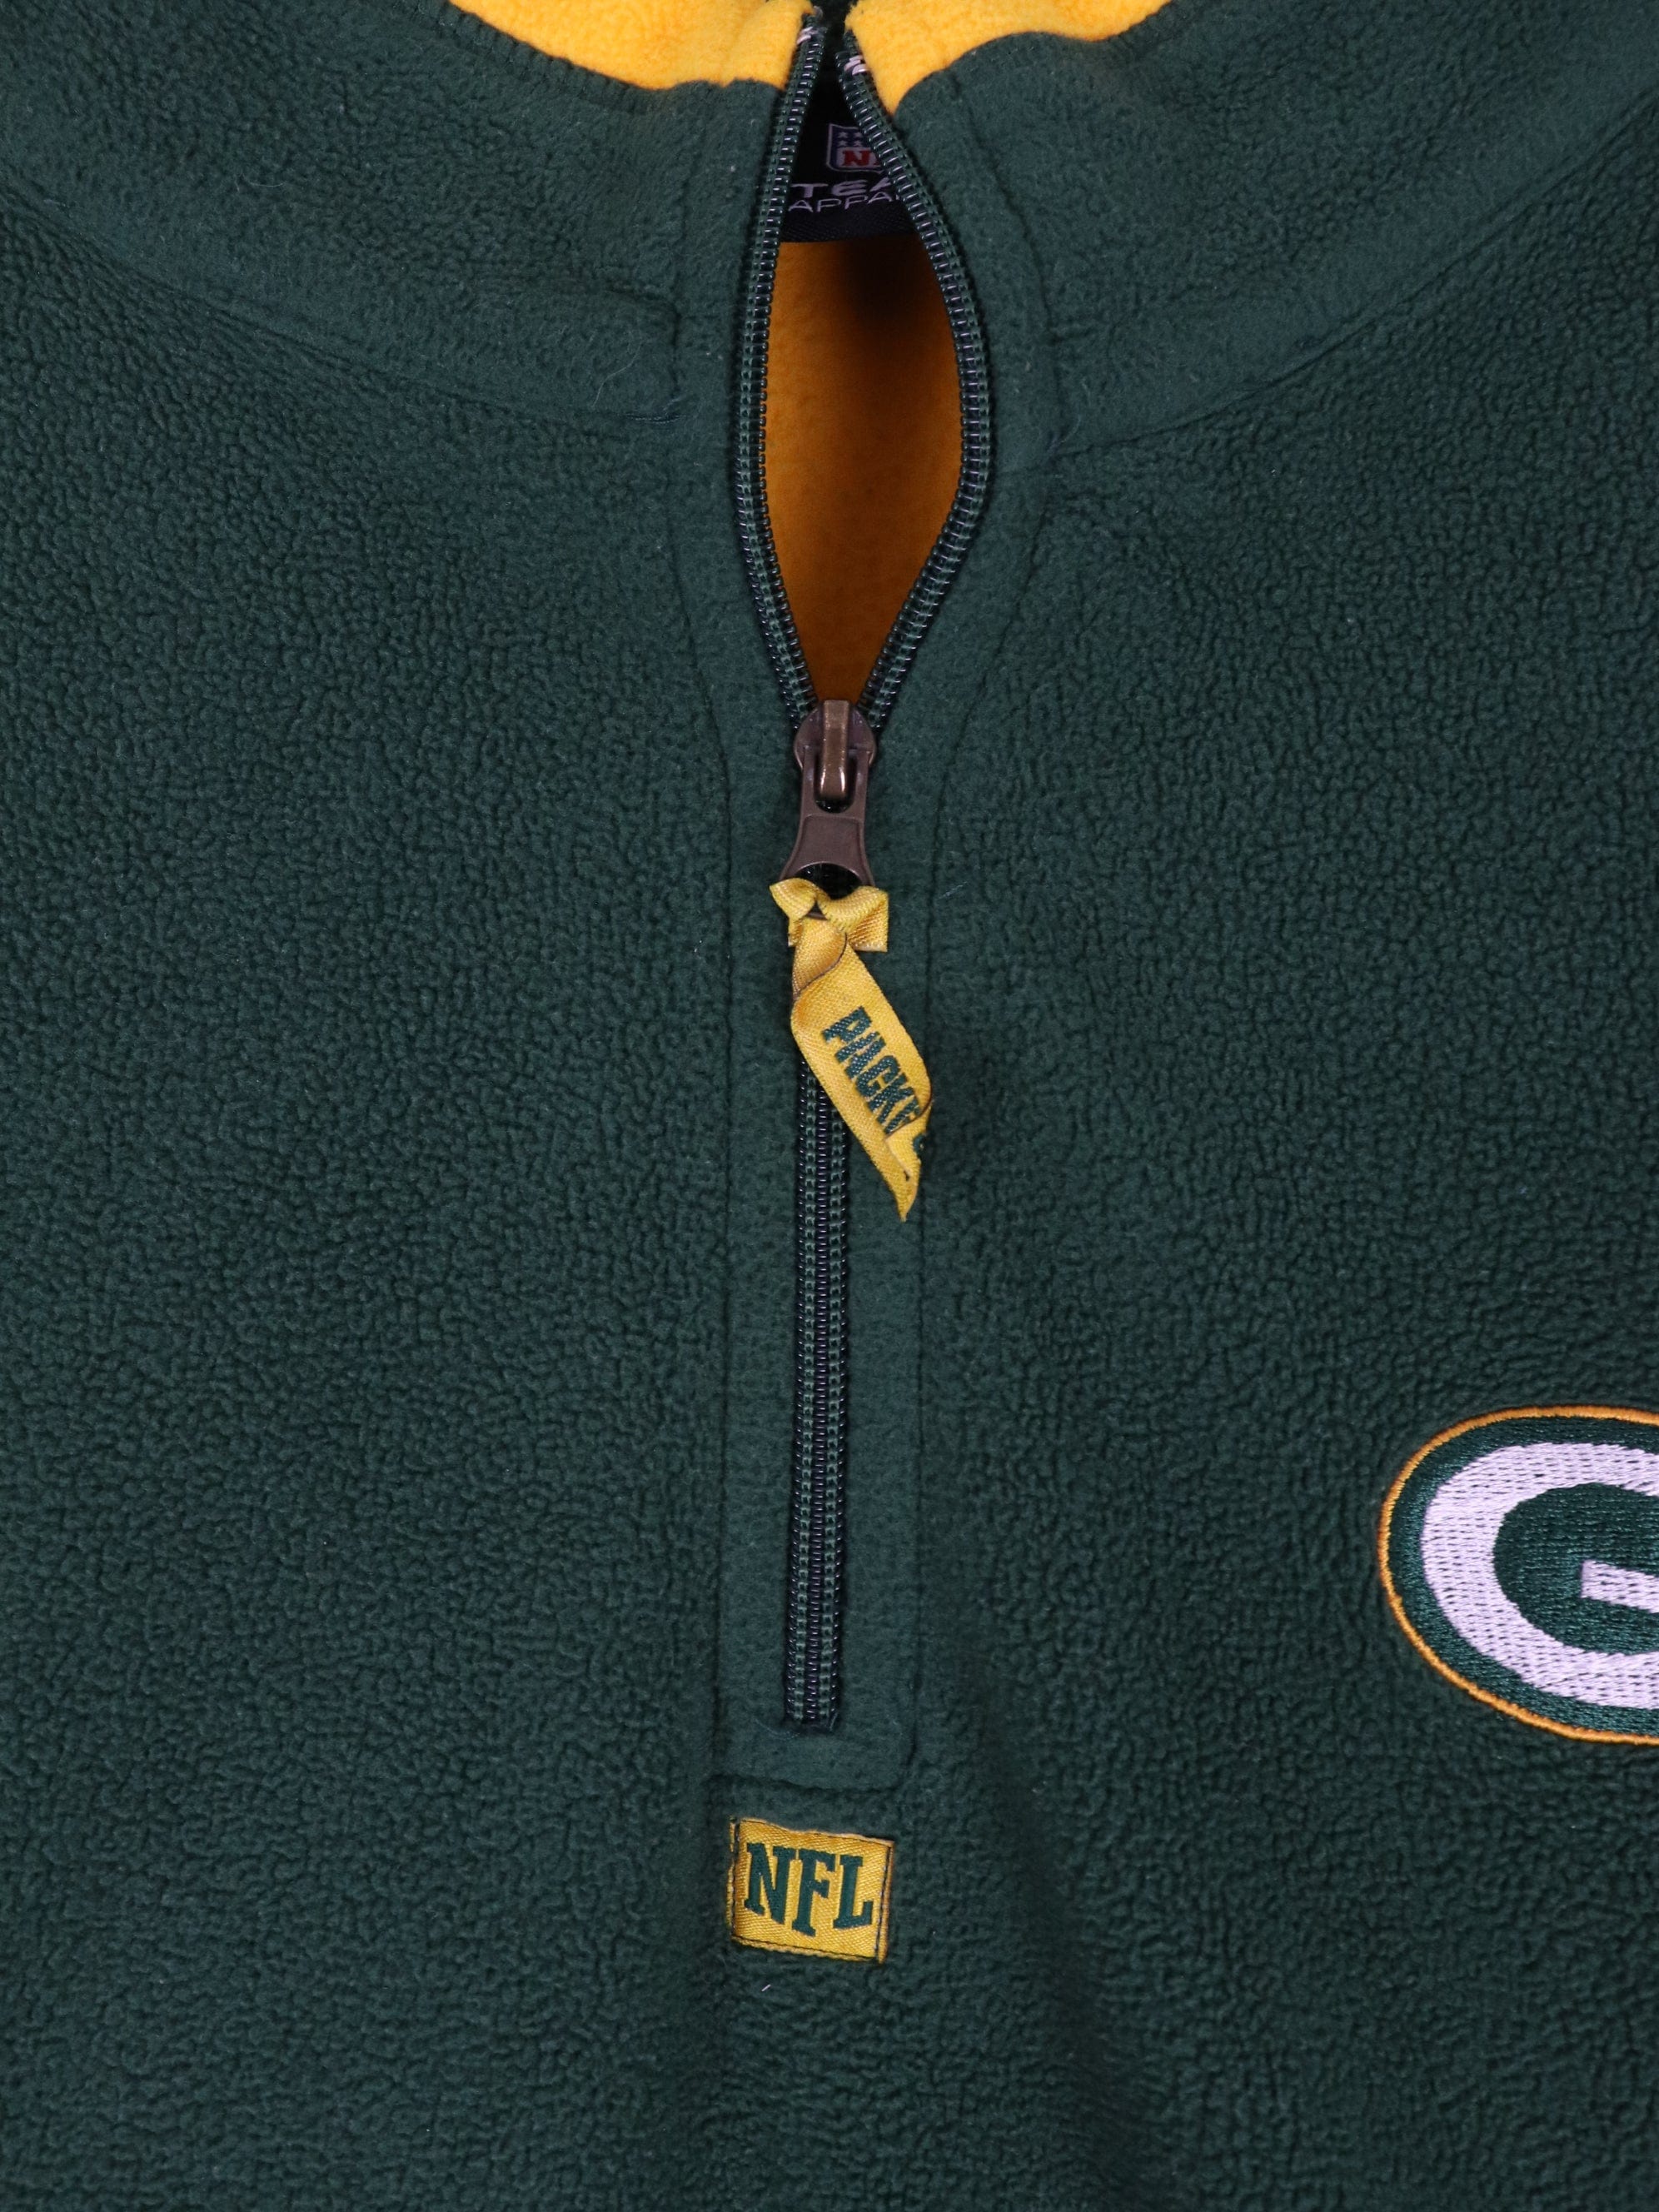 Green Bay Packers Sweater Mens XL Green NFL Football Fleece Quarter Zip